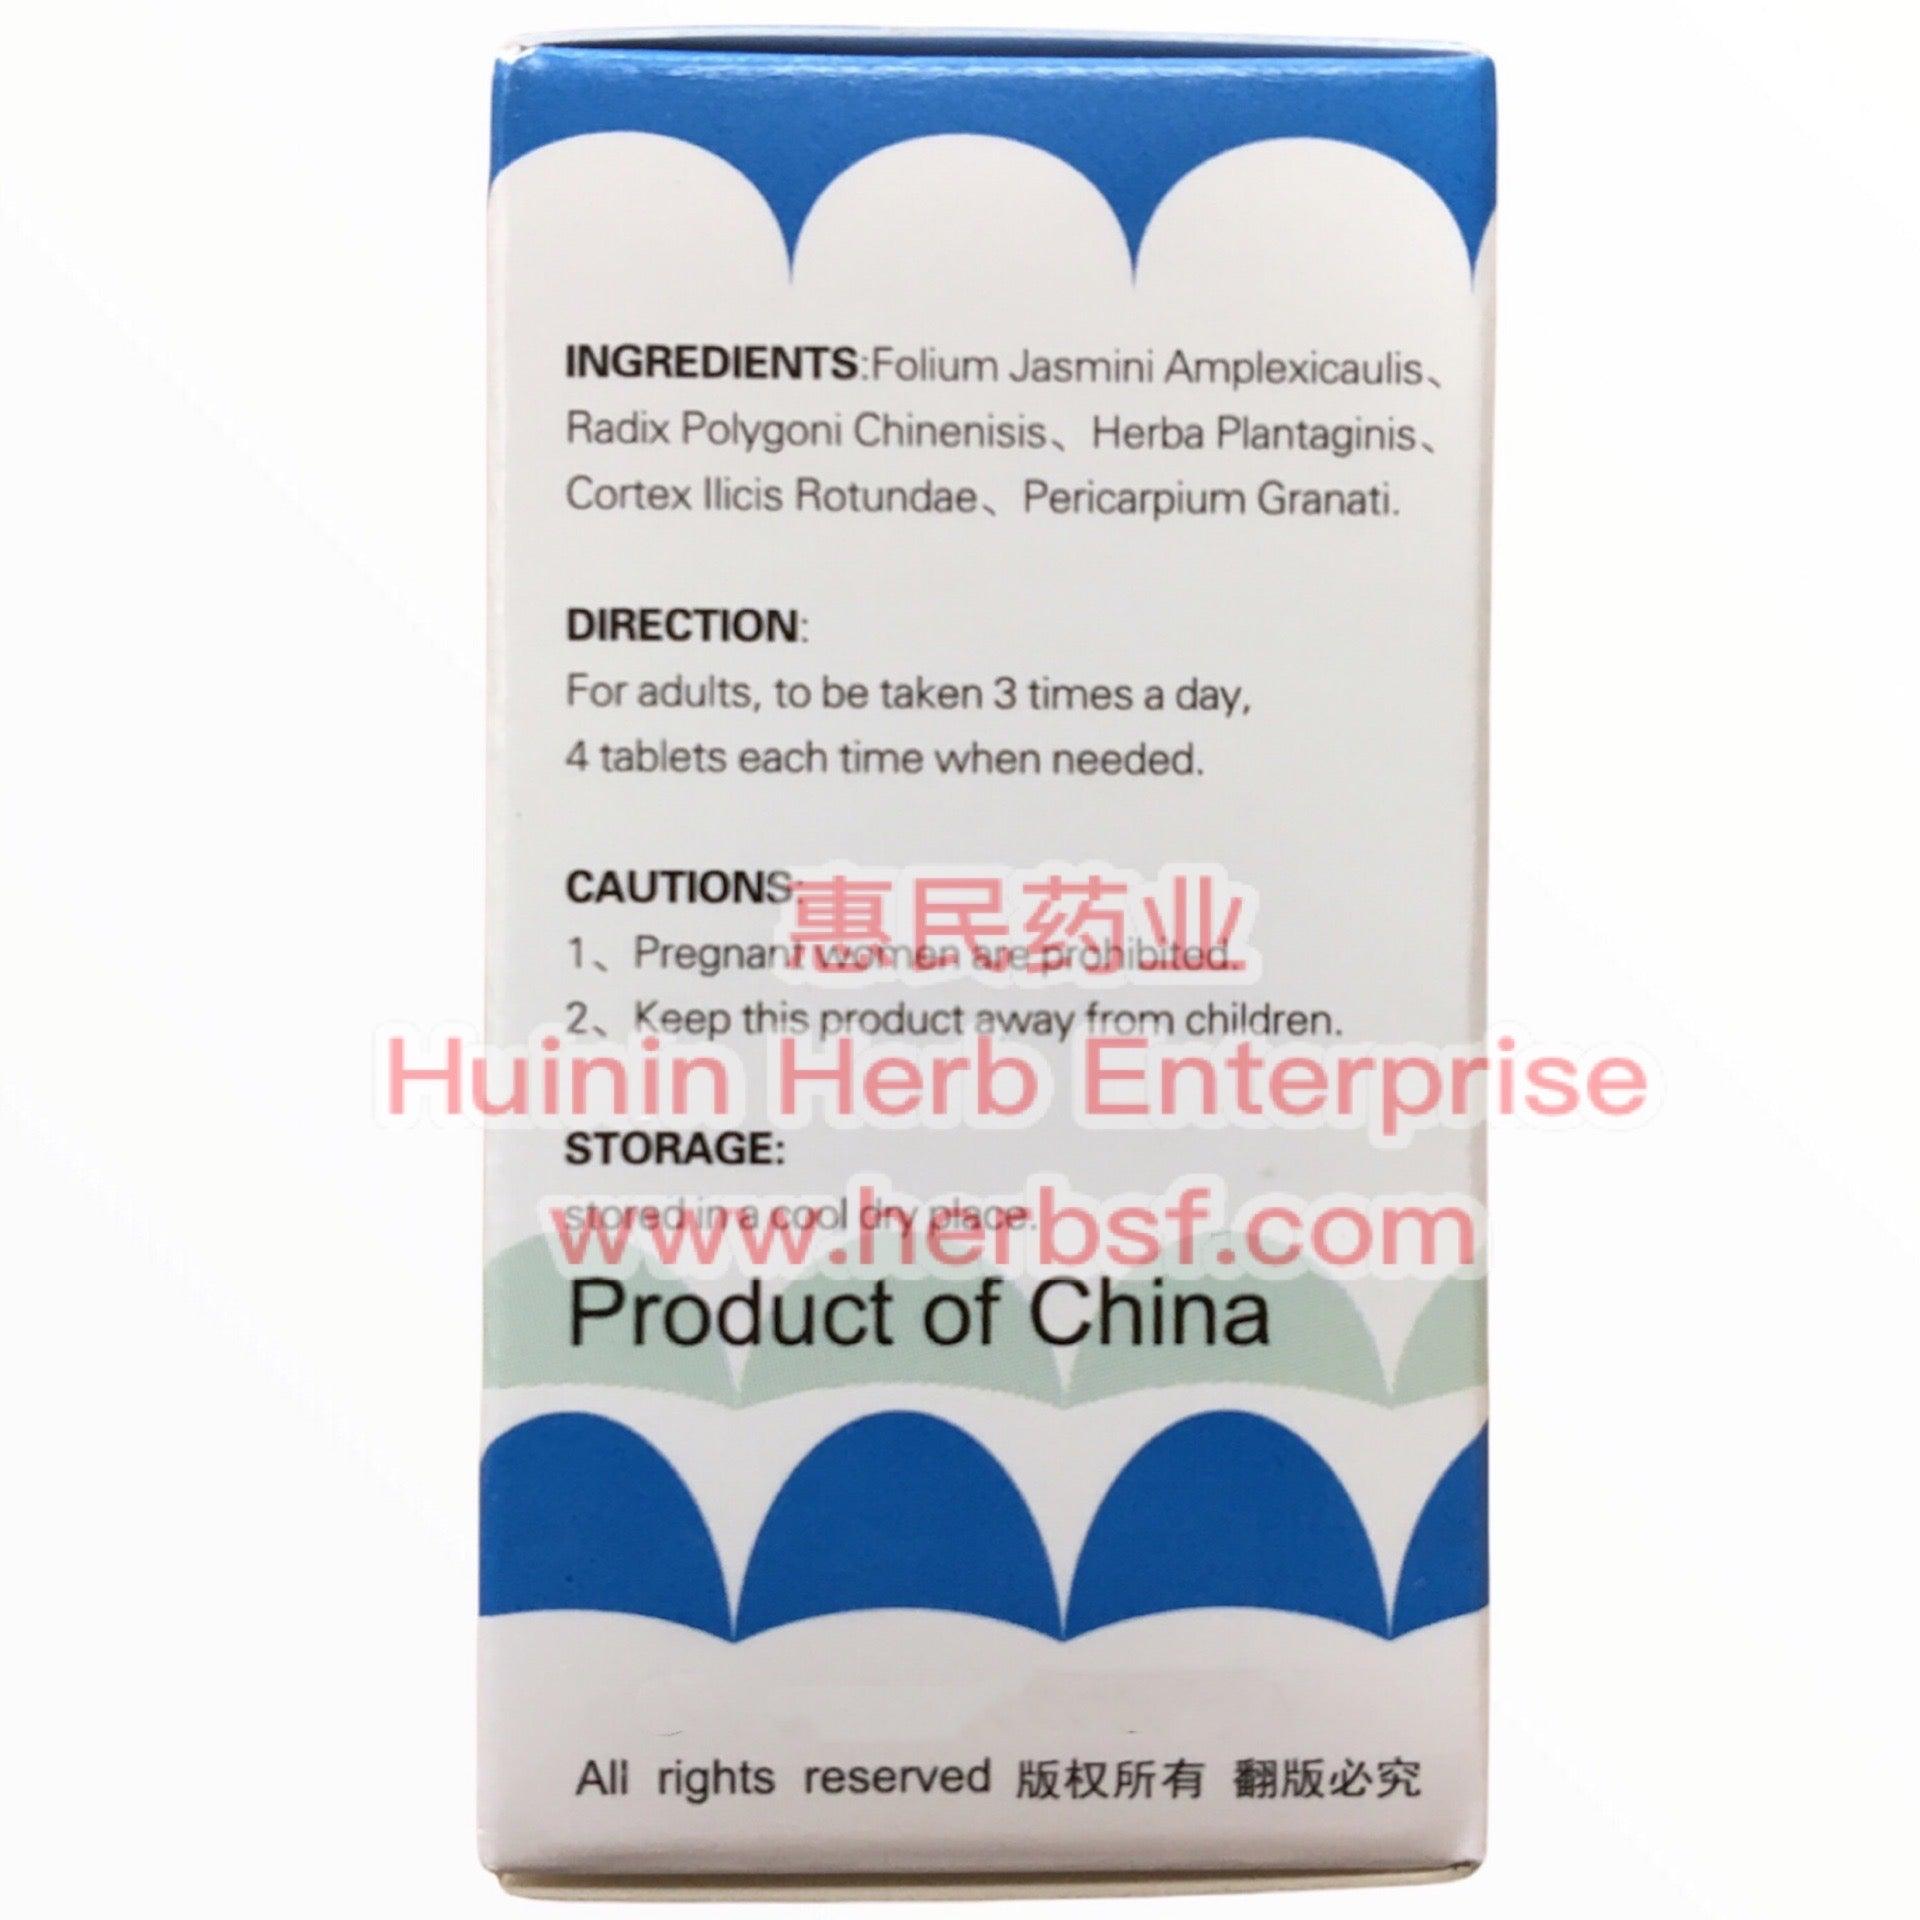 Fu Ke An - Huimin Herb Online, LLC